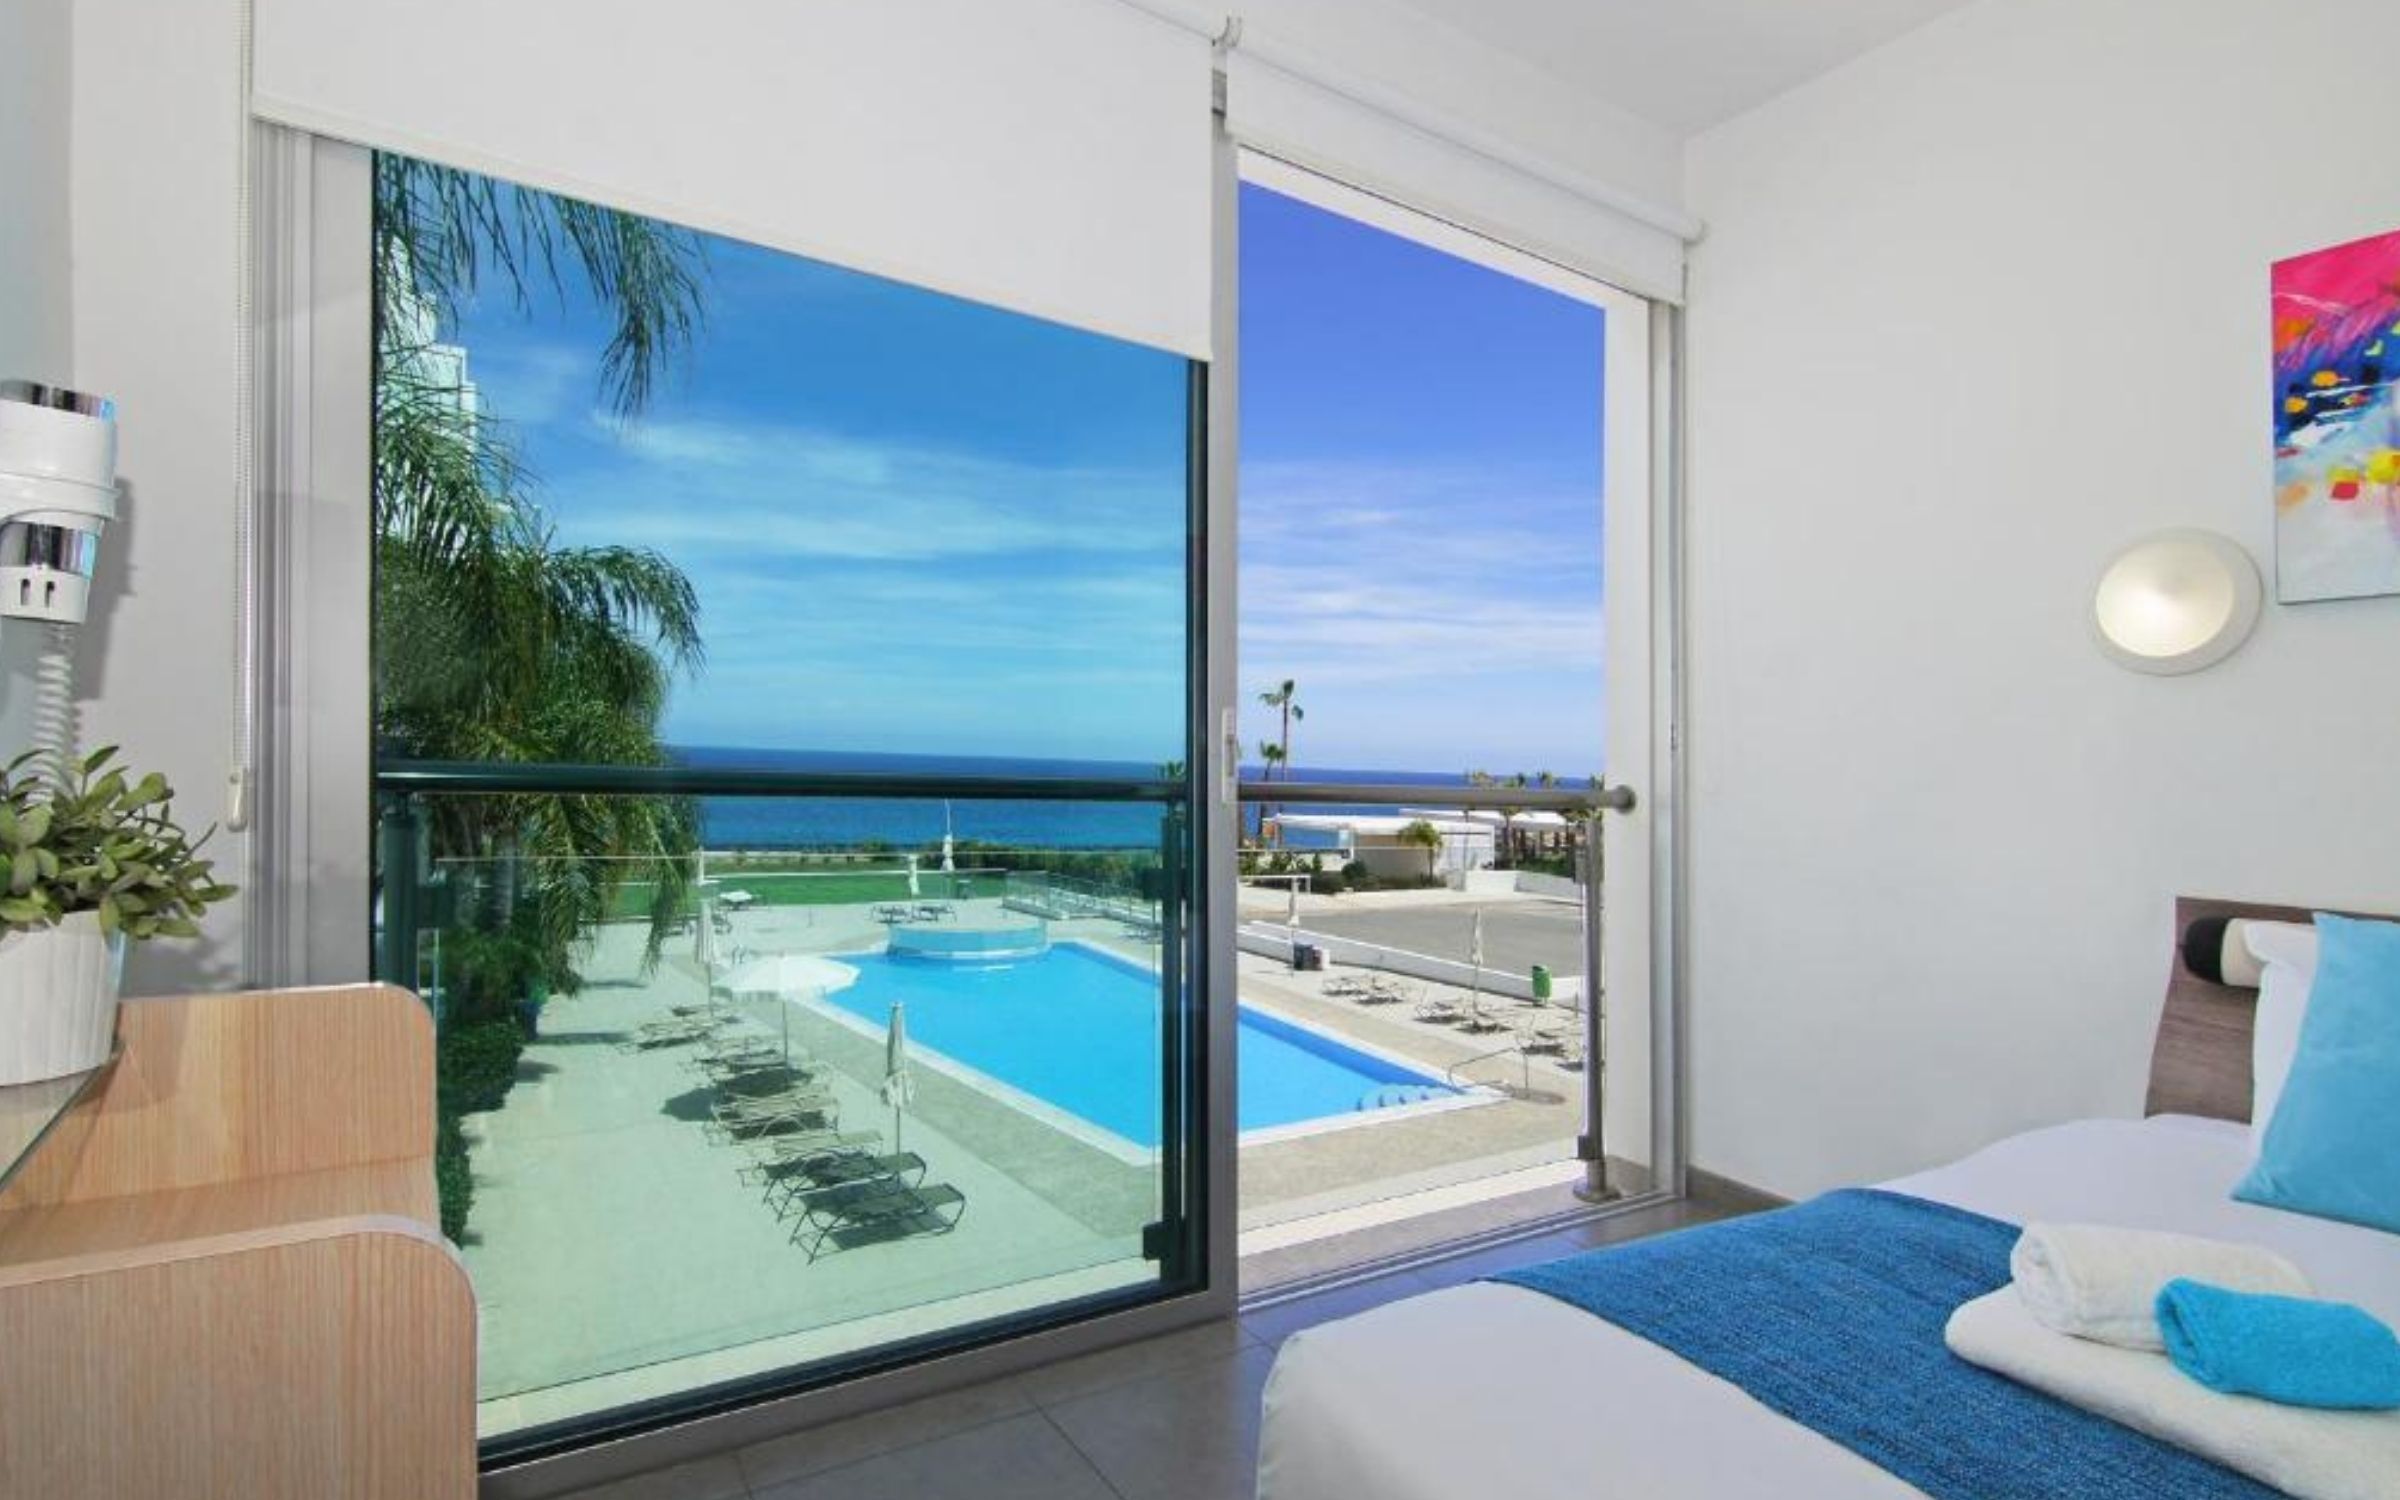 Coralli Beachfront Resort Cyprus